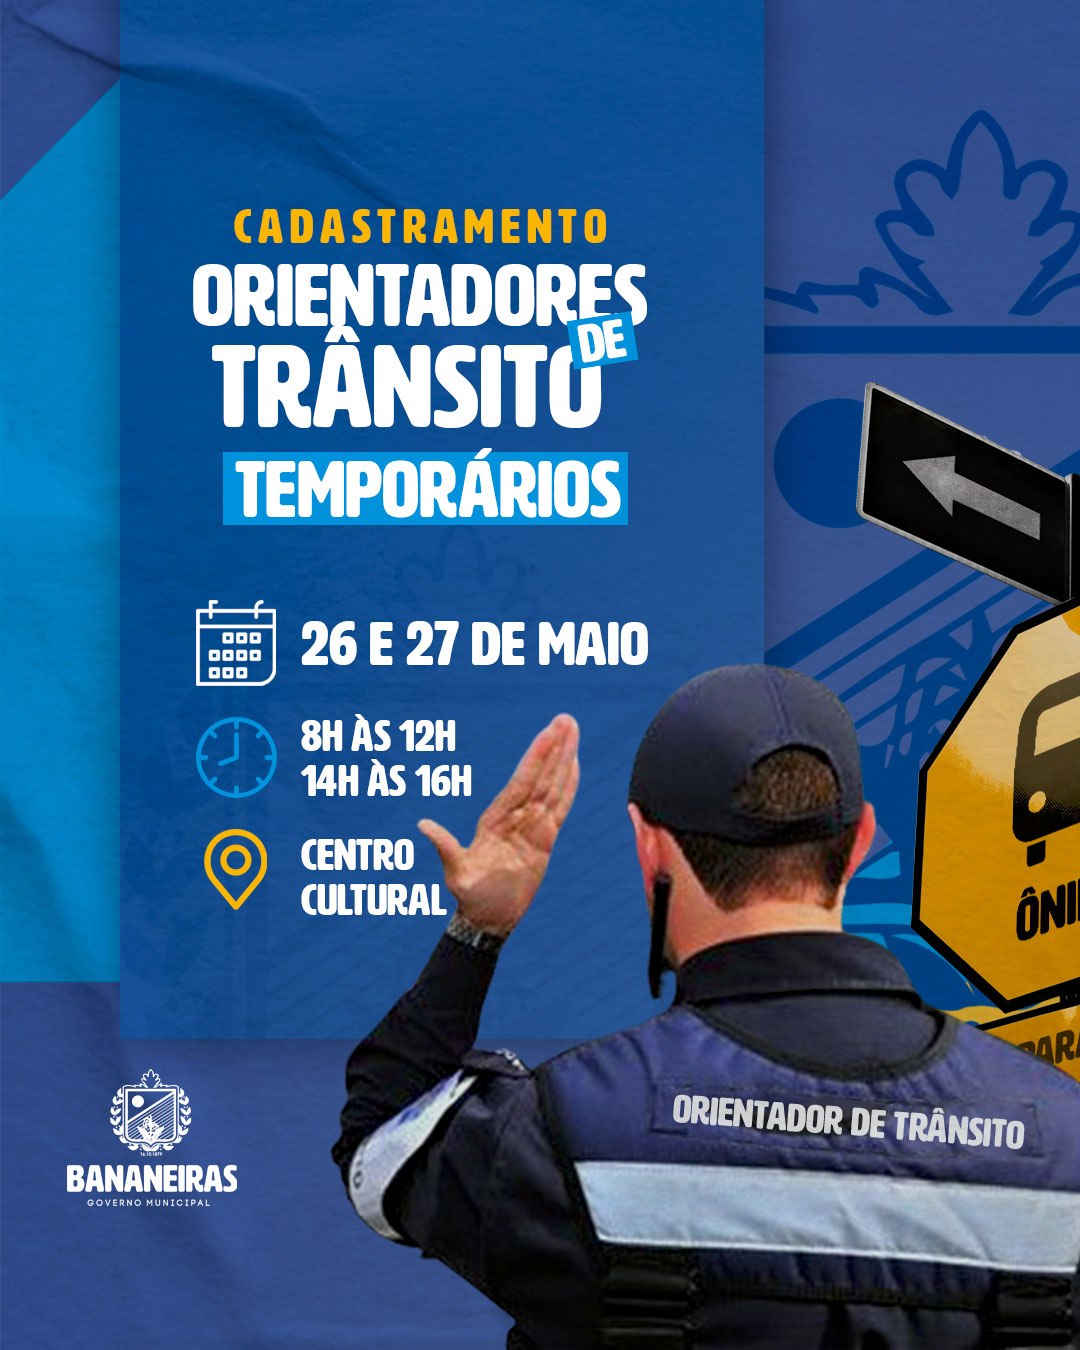 Prefeitura divulga cadastramento para Orientadores de Trânsito temporários em Bananeiras